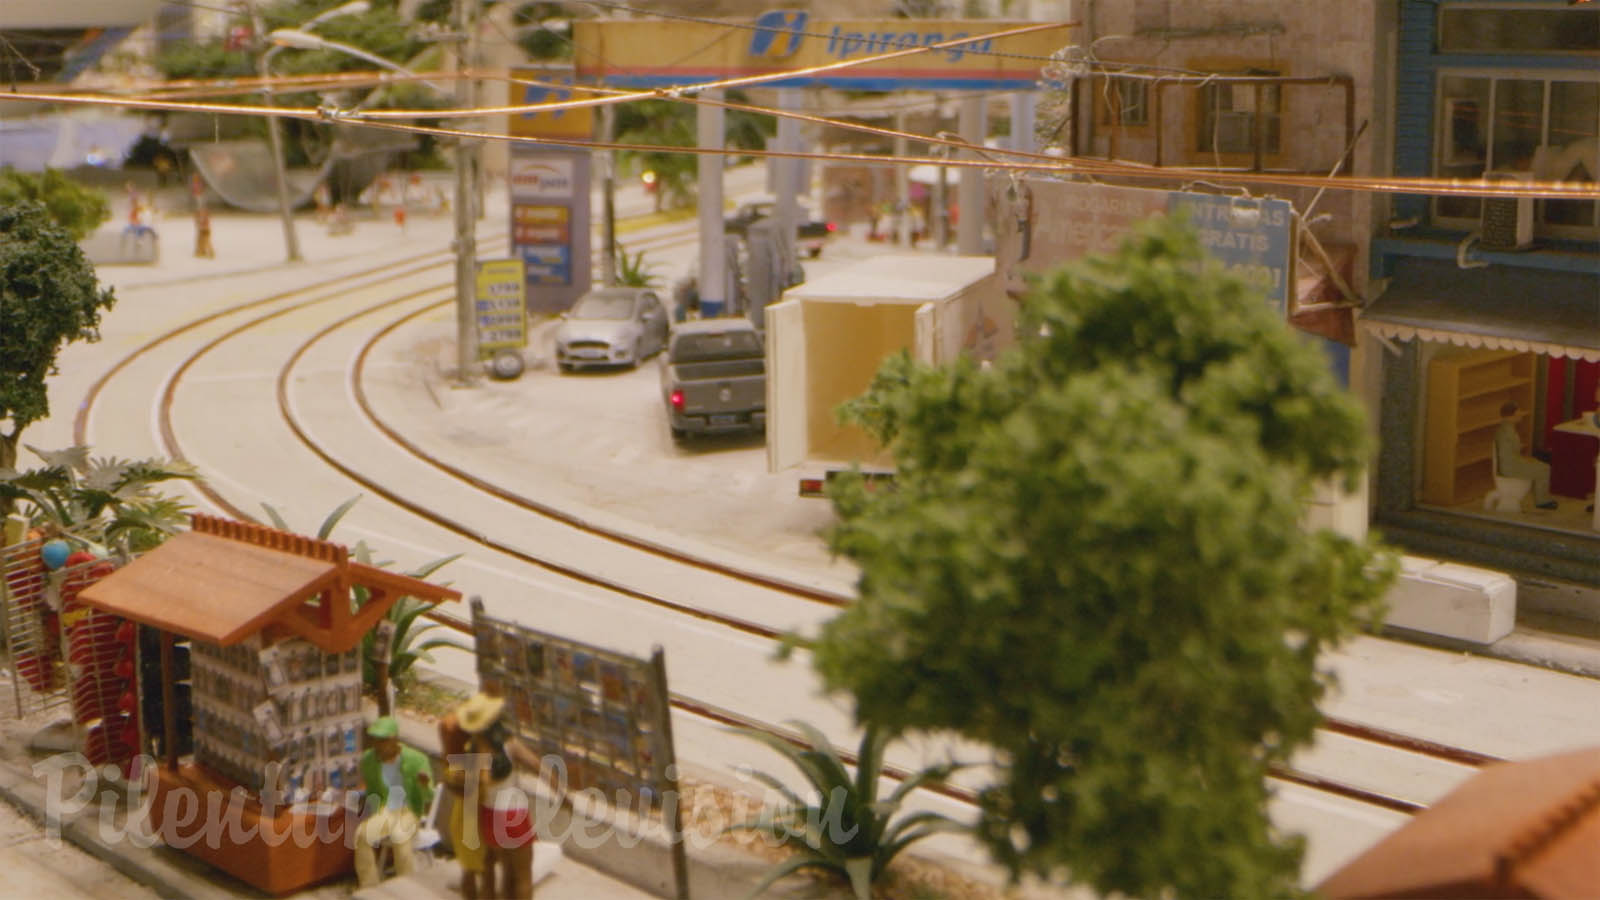 Le fantastique diorama de la ville de Rio de Janeiro au Brésil: Un superbe réseau ferroviaire à l'échelle HO